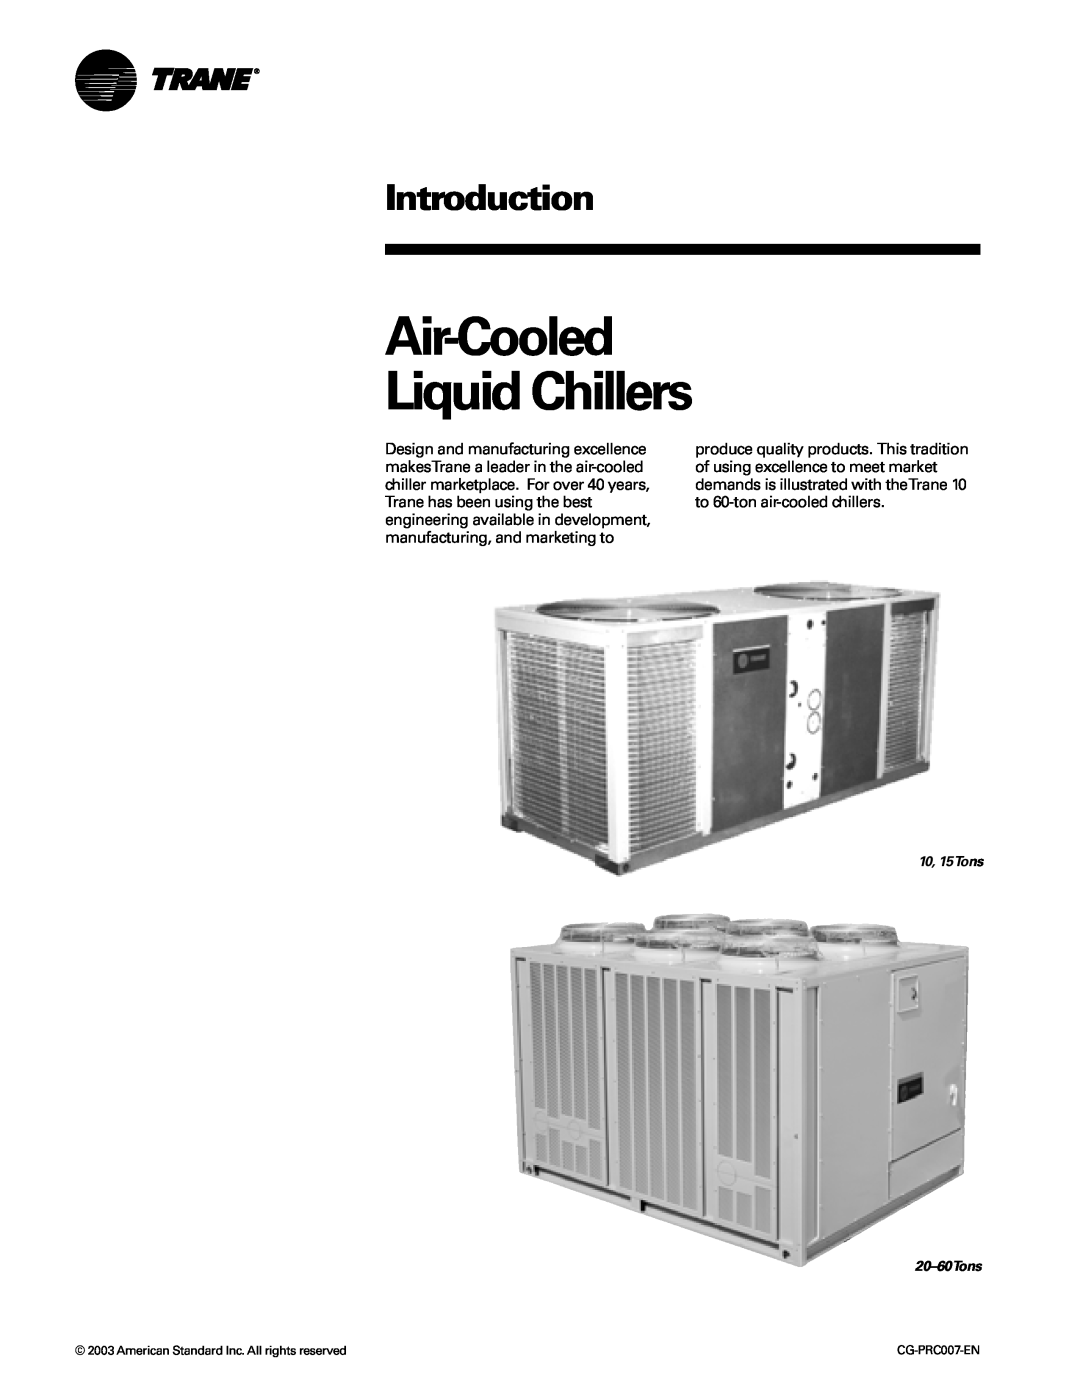 Trane CG-PRC007-EN manual Introduction, Air-CooledLiquid Chillers, 10, 15Tons 20-60Tons 